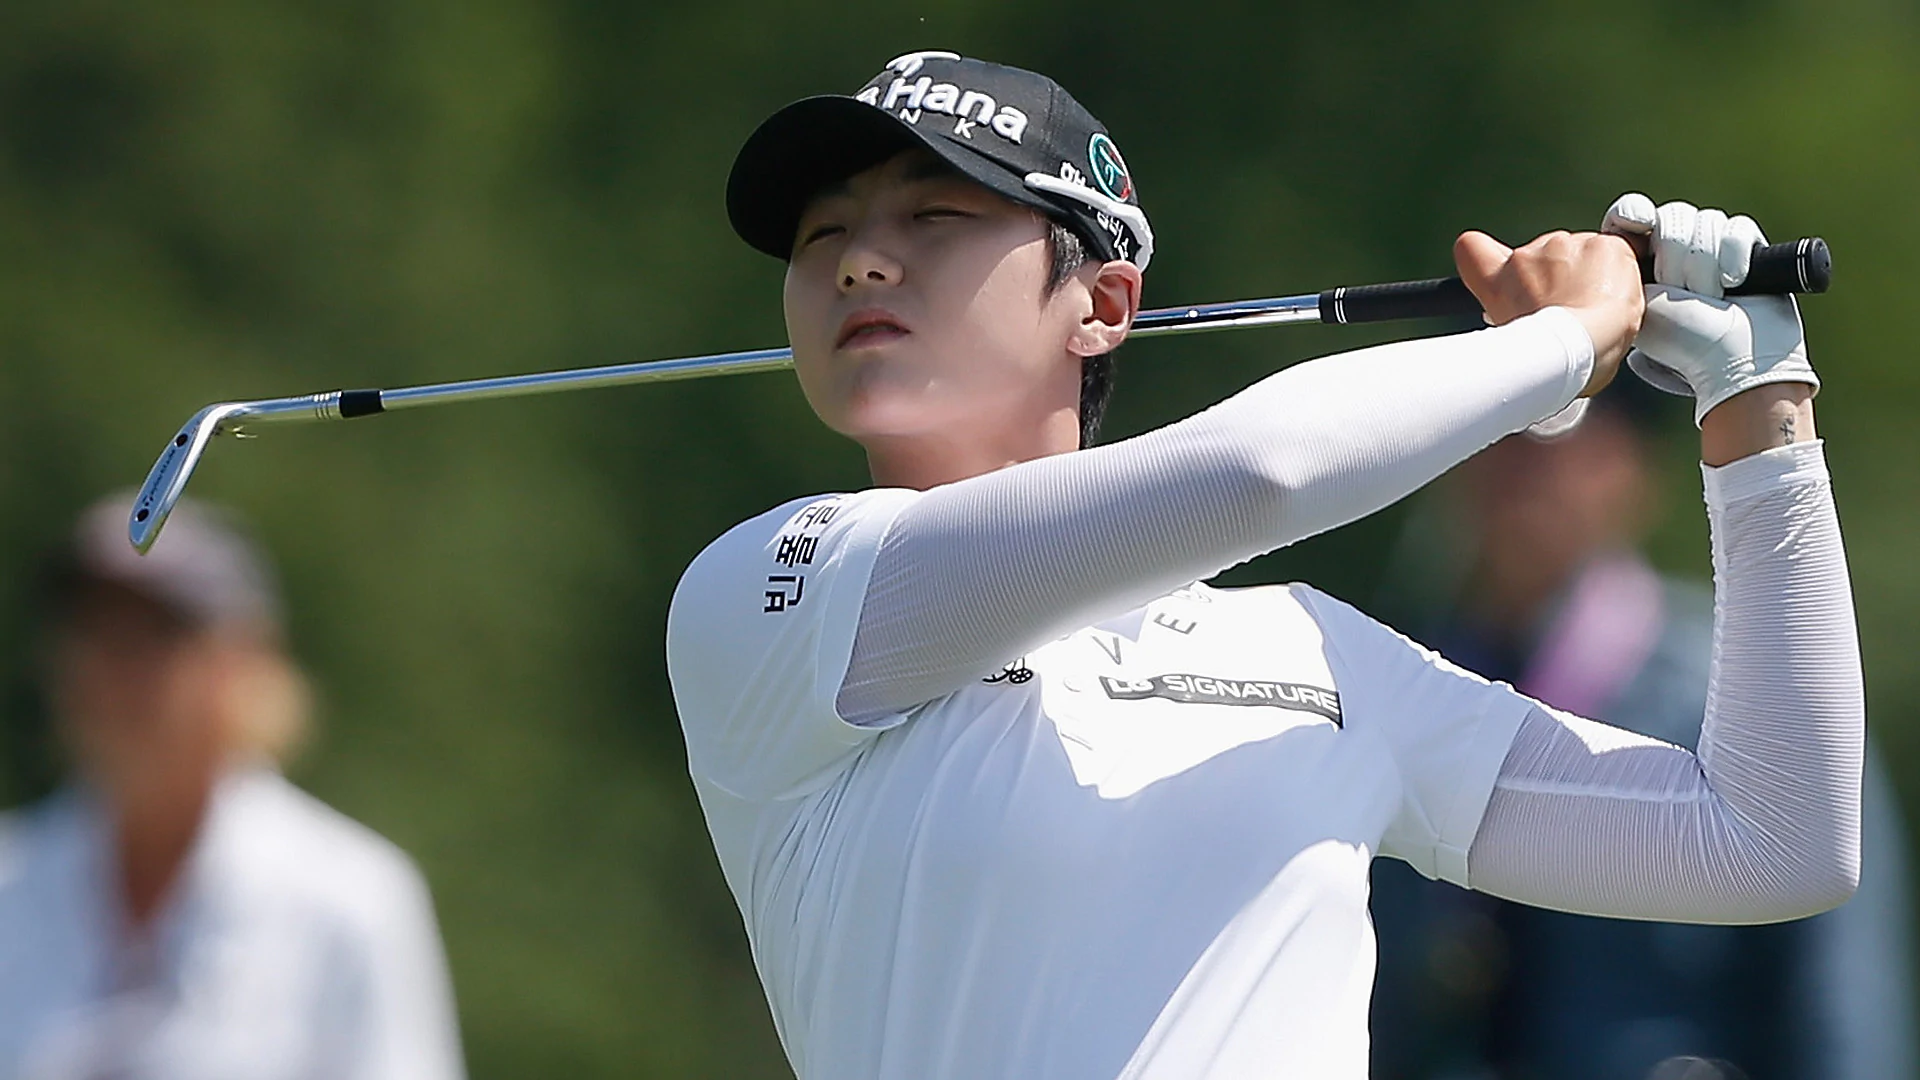 Park tops amateur Choi to win U.S. Women's Open 4